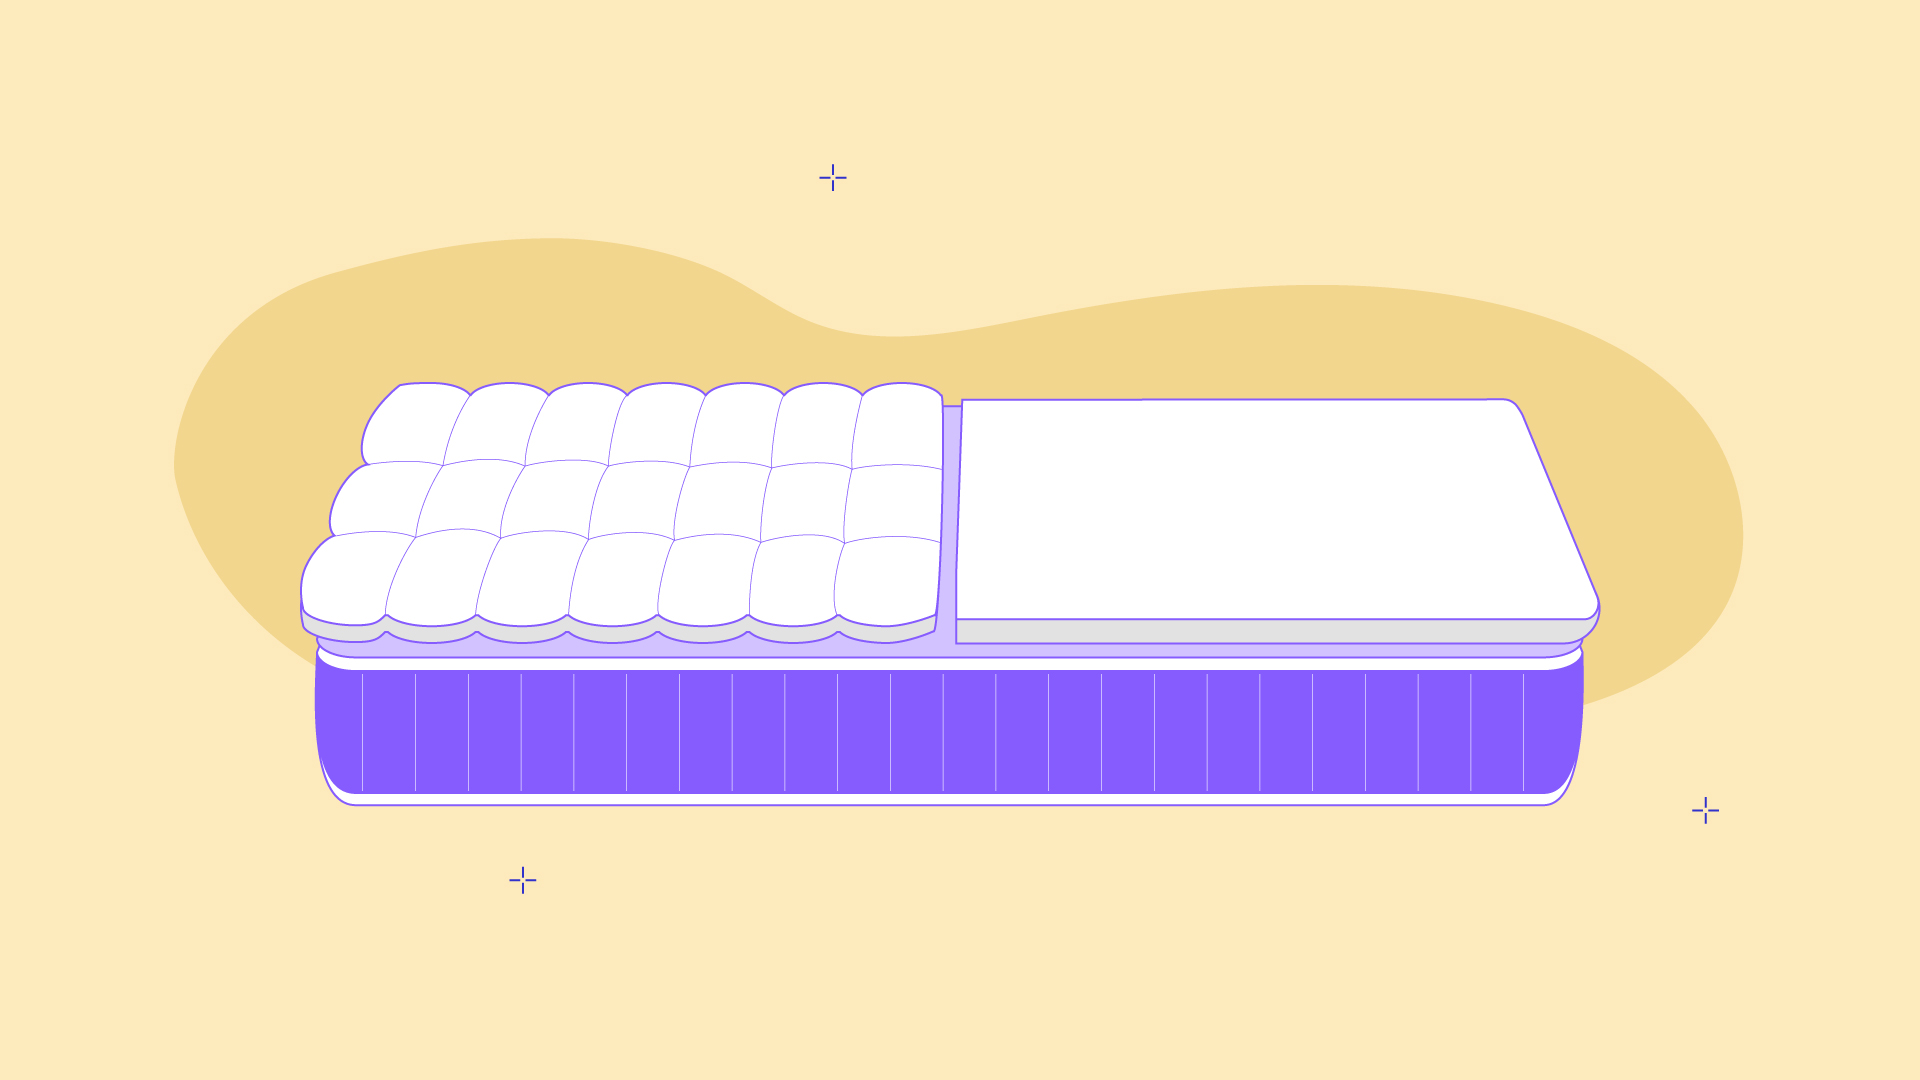 mattress topper vs quilt